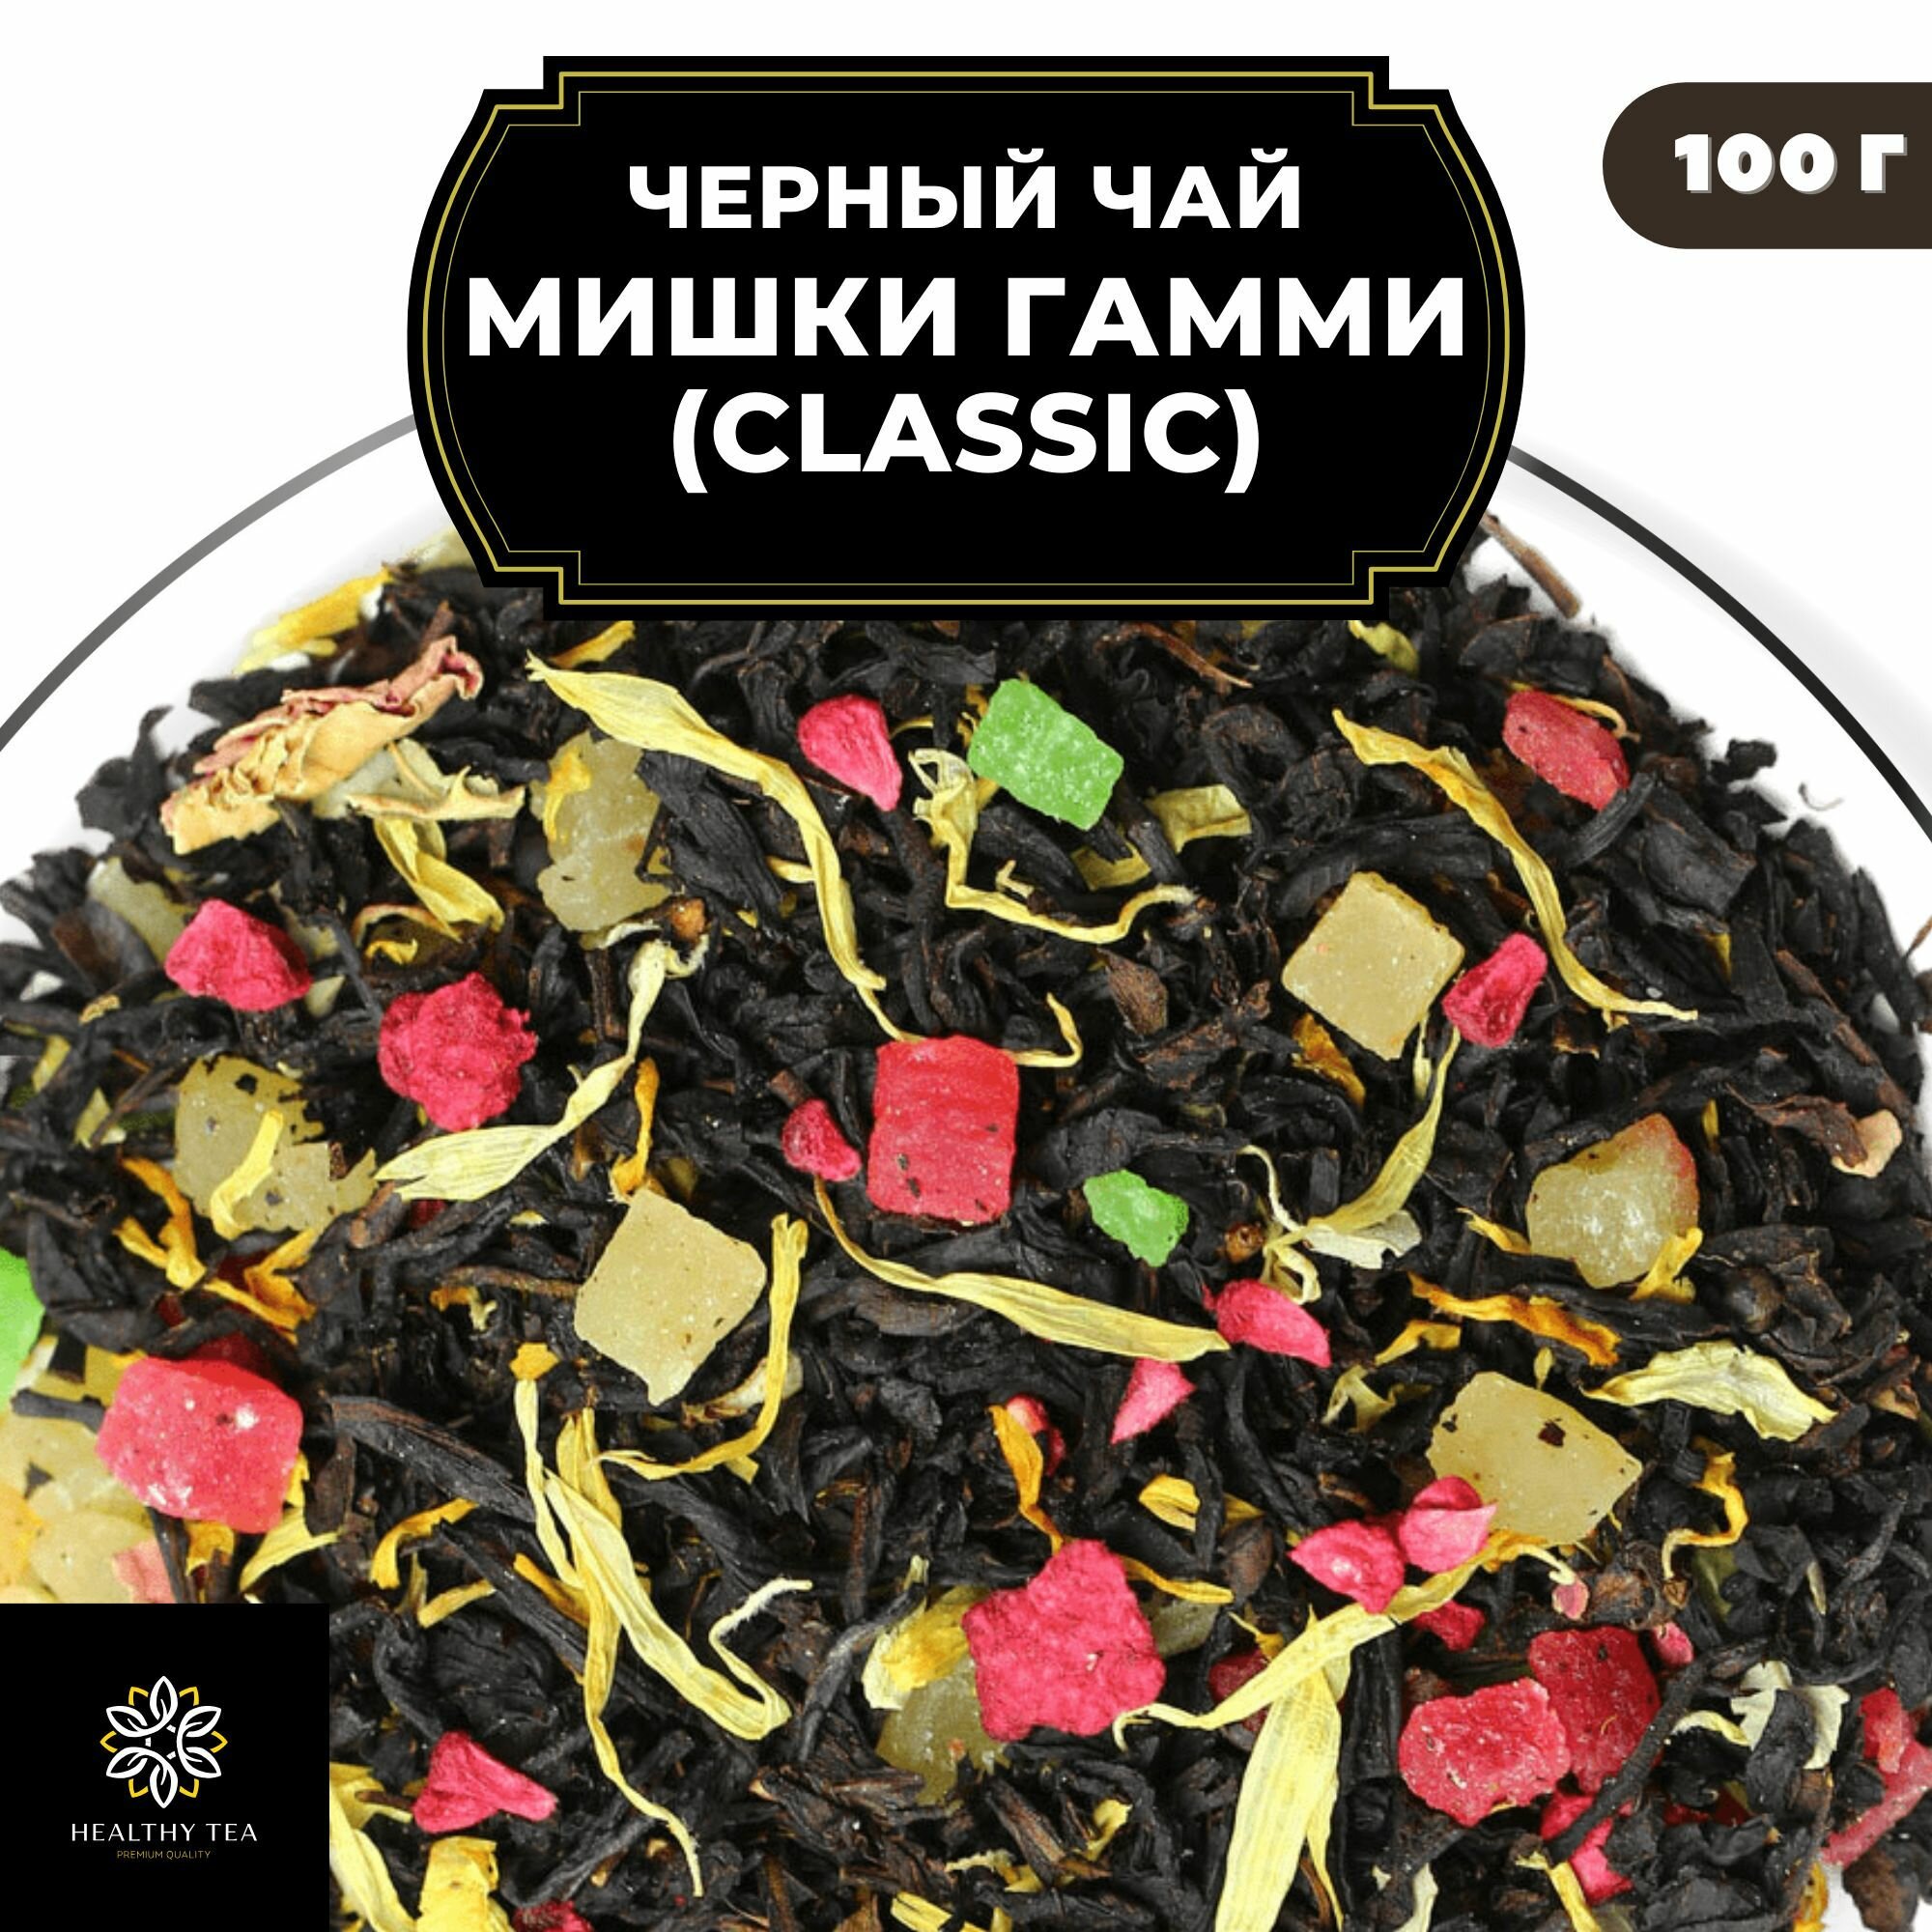 Цейлонский Черный чай с малиной, ананасом, розой и календулой "Мишки Гамми" (Classic) Полезный чай / HEALTHY TEA, 100 гр